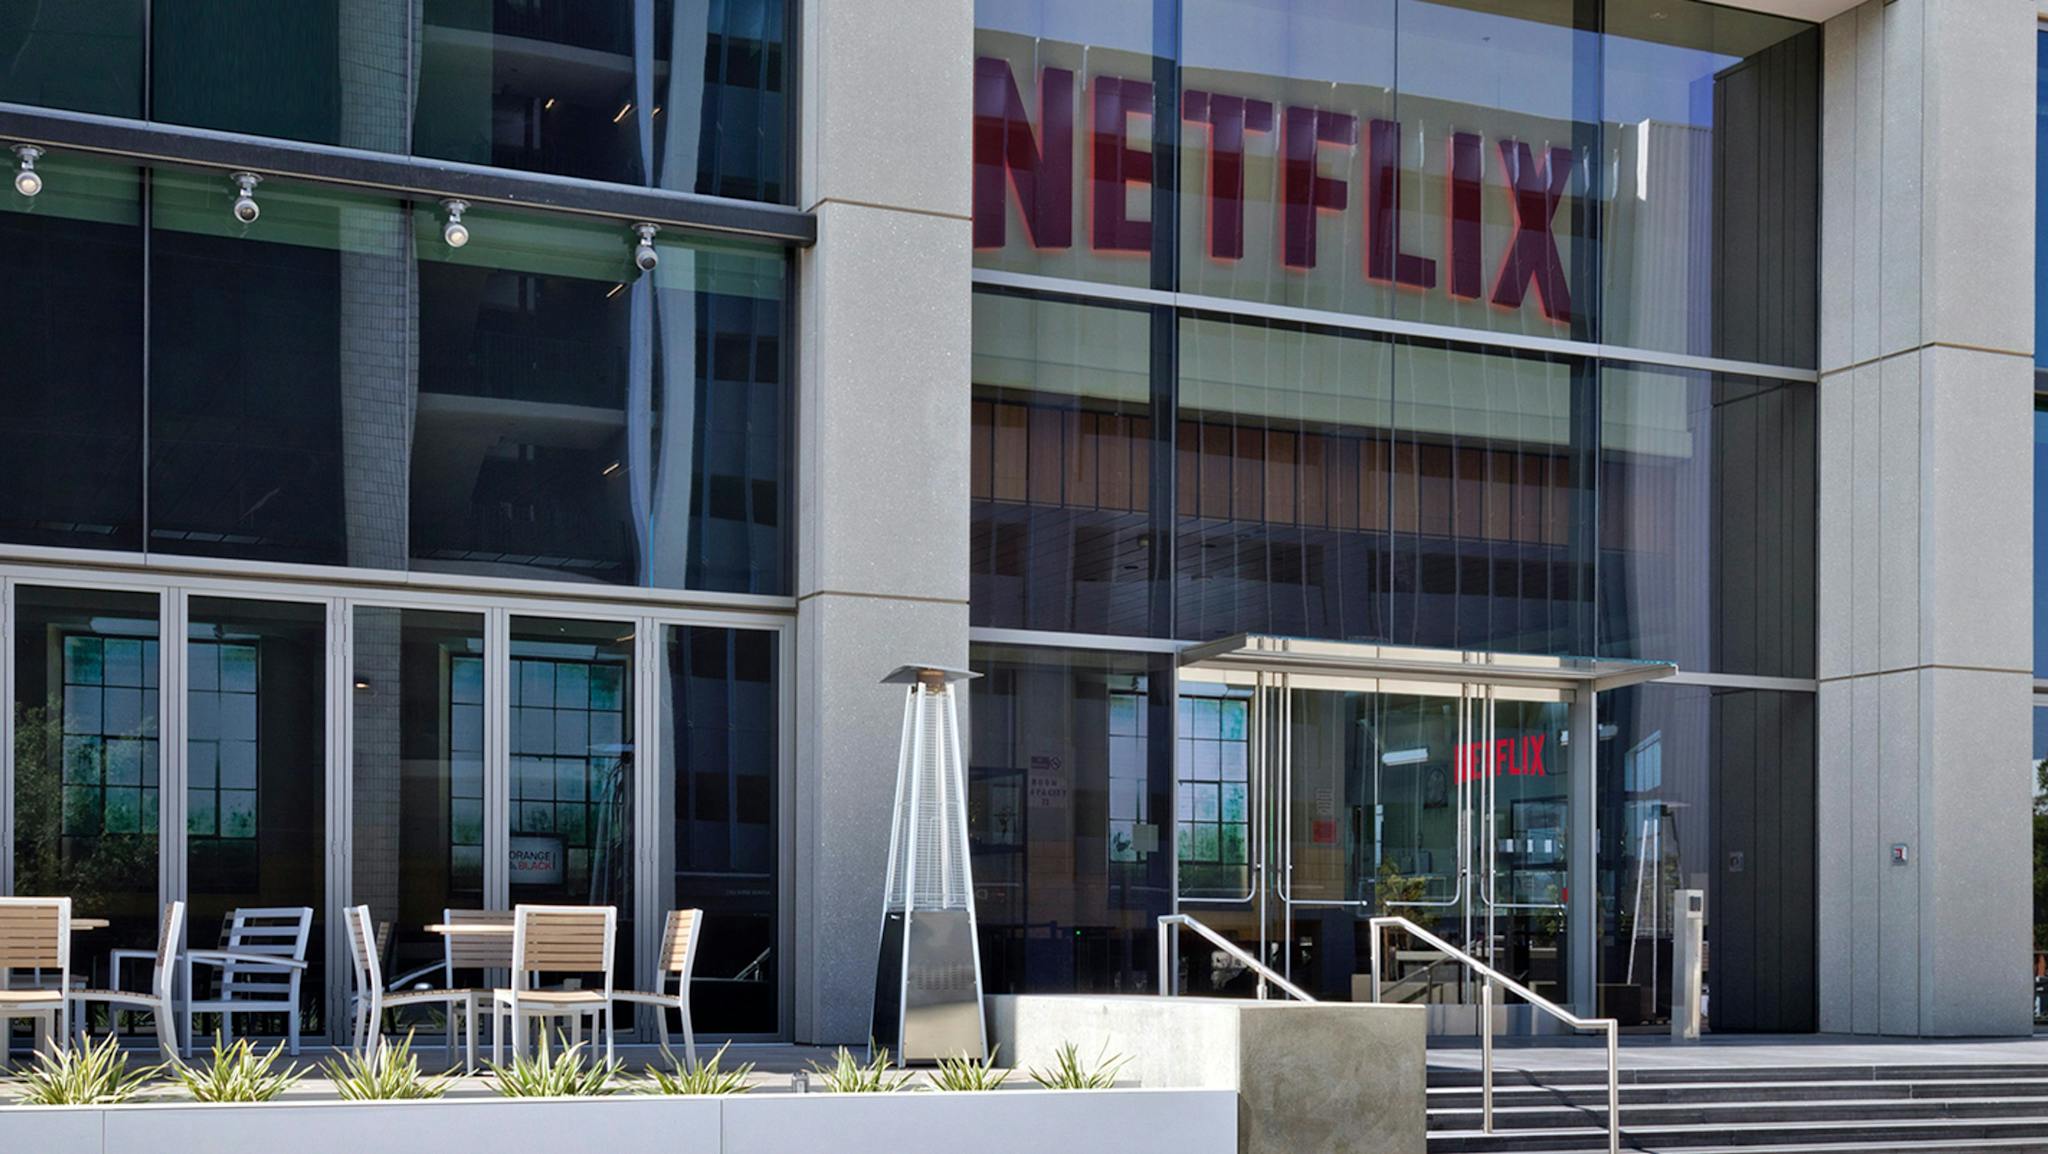 Las oficinas centrales de Netflix en Los Angeles